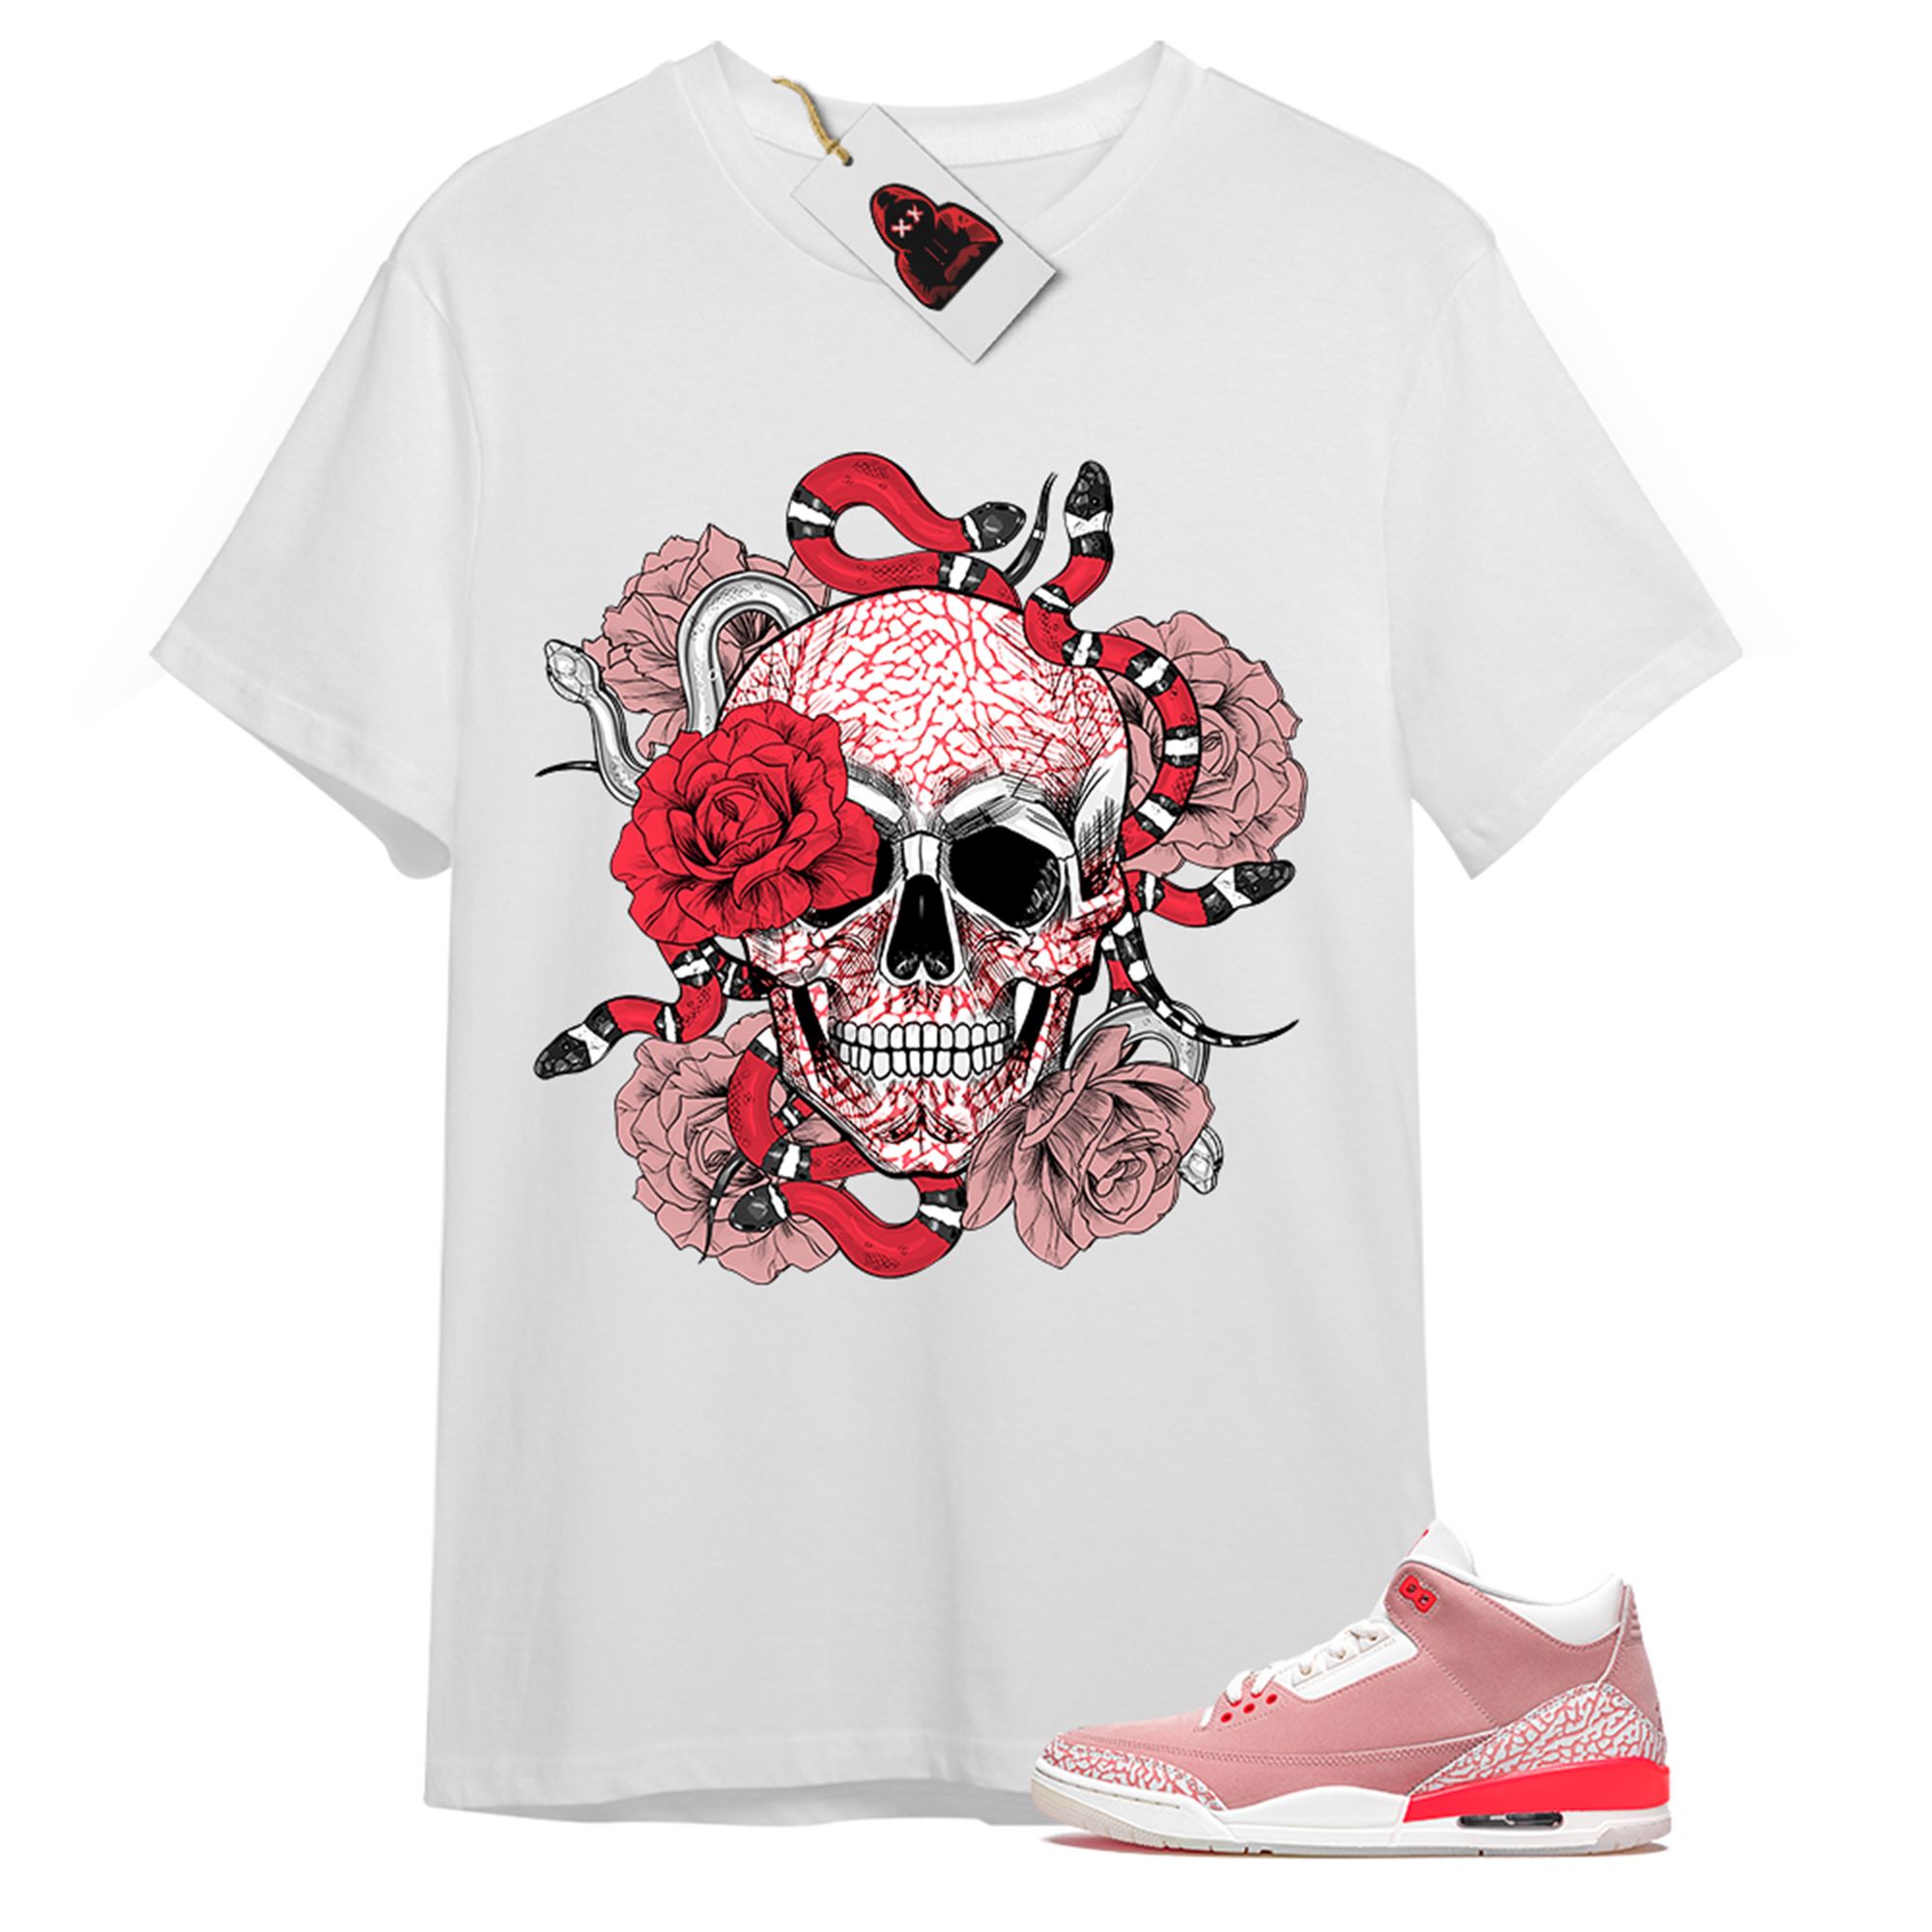 Jordan 3 Shirt, Snake Skull Rose White T-shirt Air Jordan 3 Rust Pink 3s Size Up To 5xl